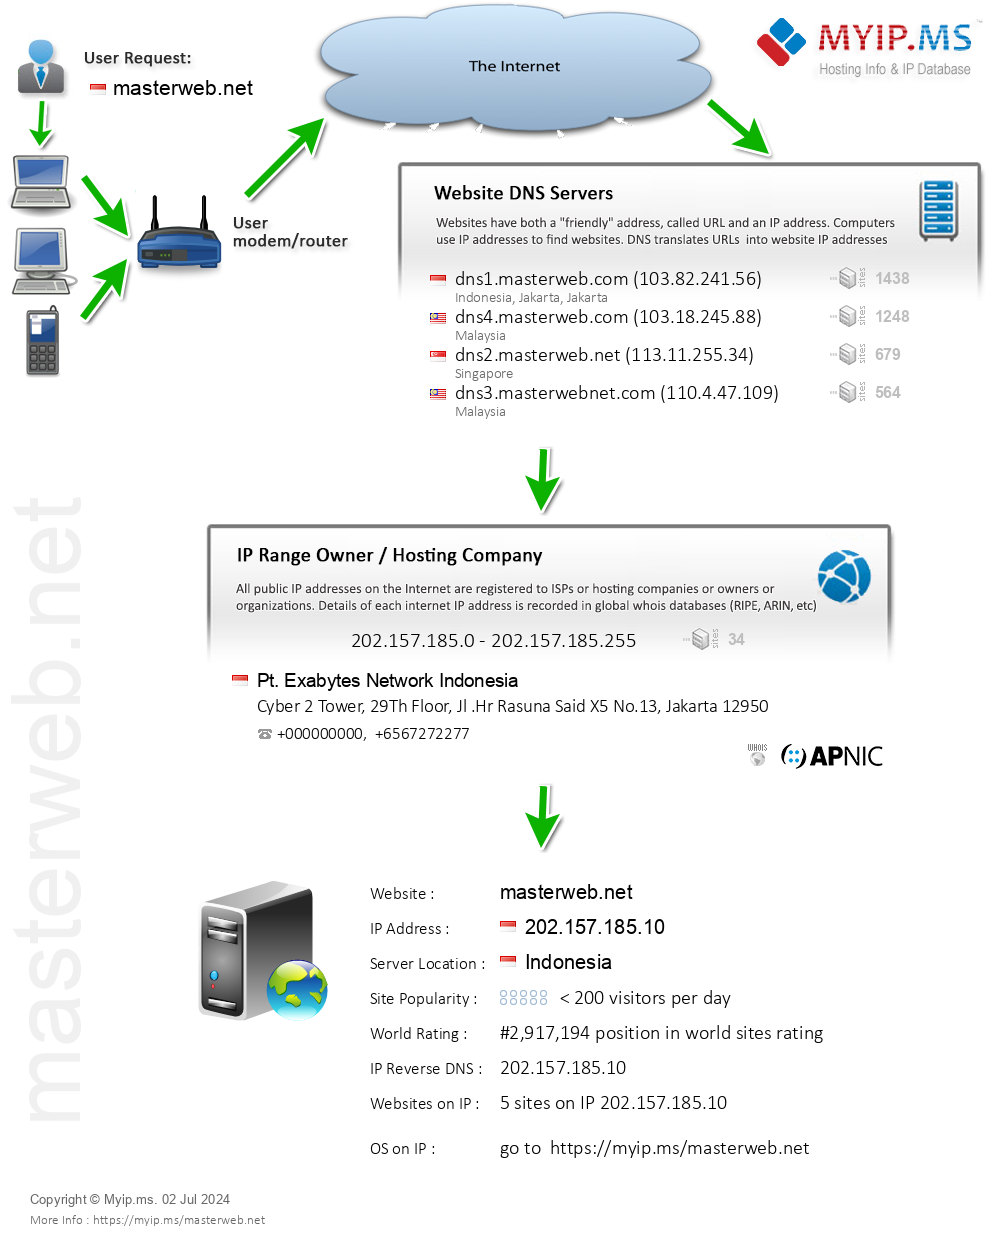 Masterweb.net - Website Hosting Visual IP Diagram